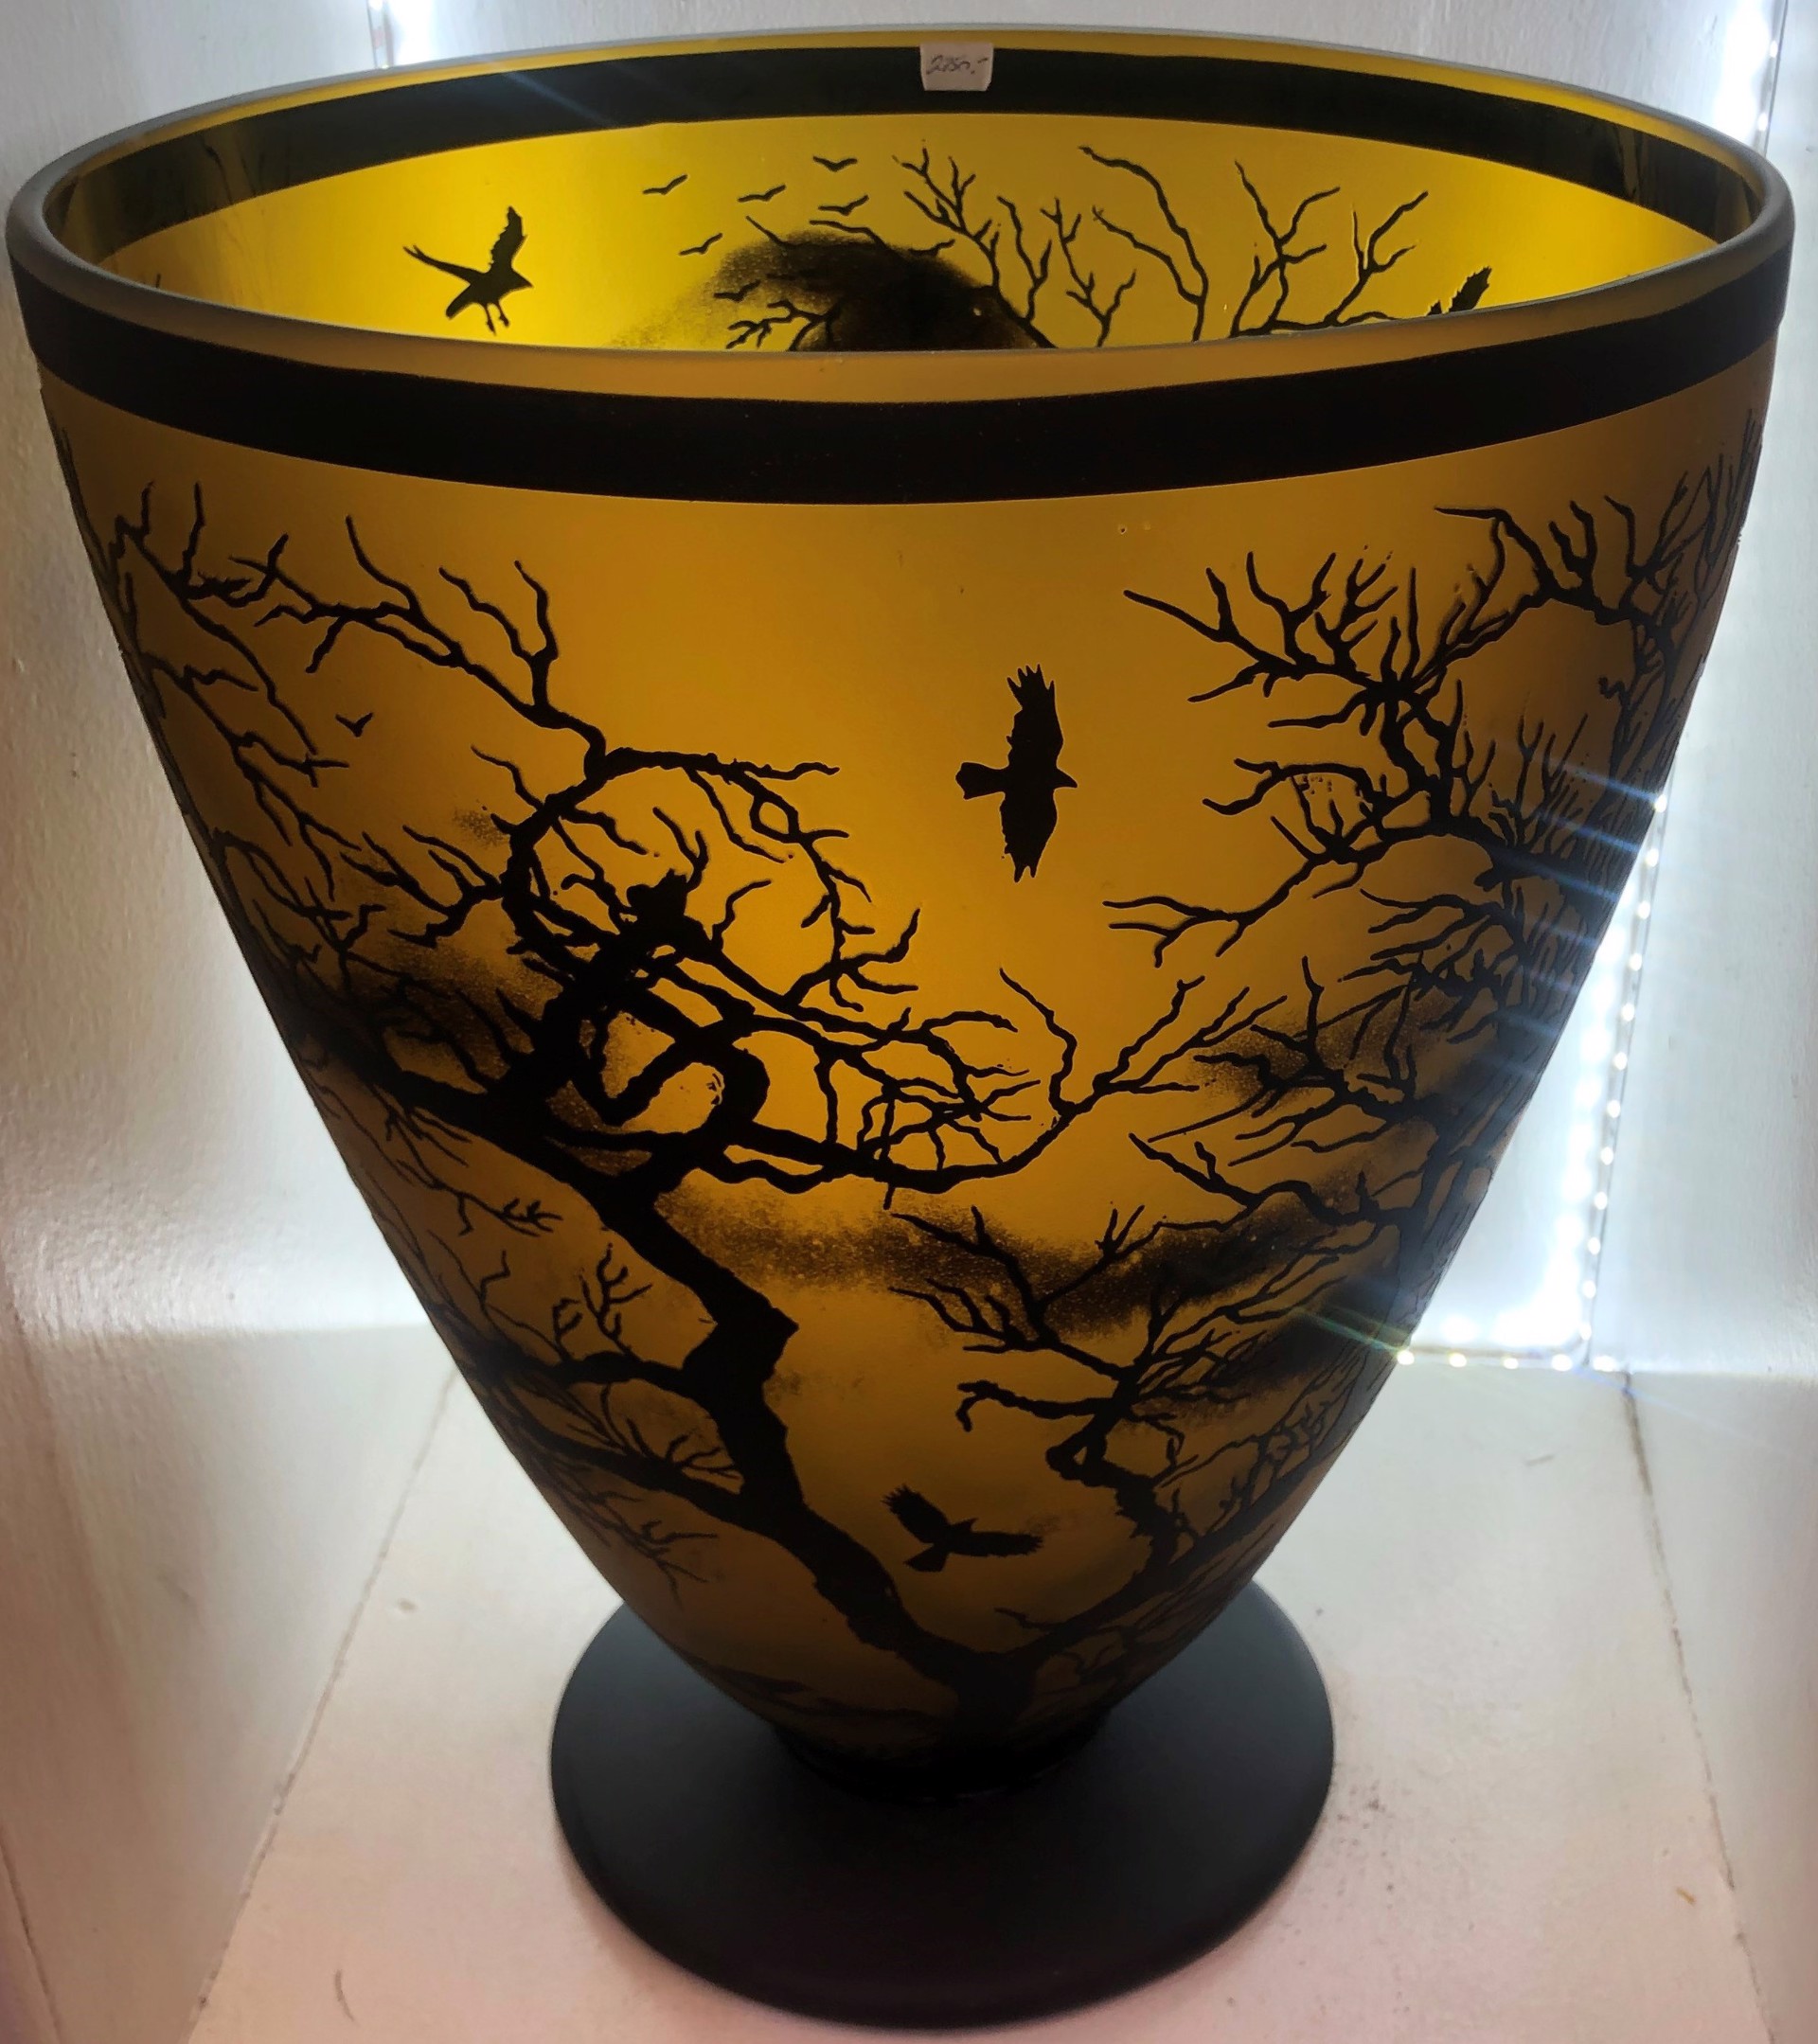 Large Vase with Imagery by Carol Nesbitt